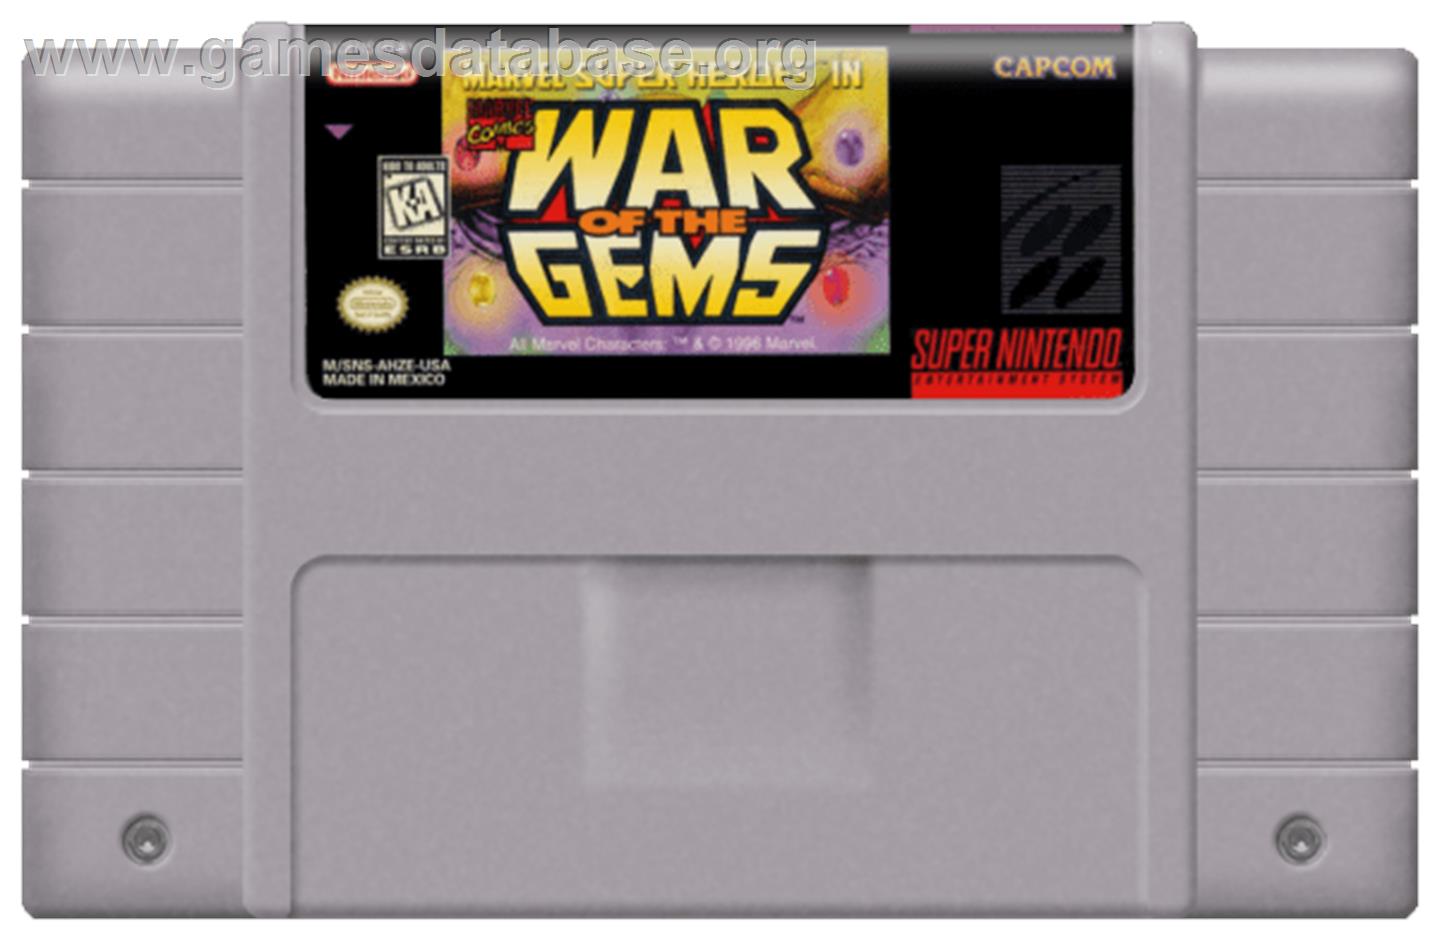 tornillo comunidad Hacia Marvel Super Heroes in War of the Gems - Nintendo SNES - Artwork - Cartridge